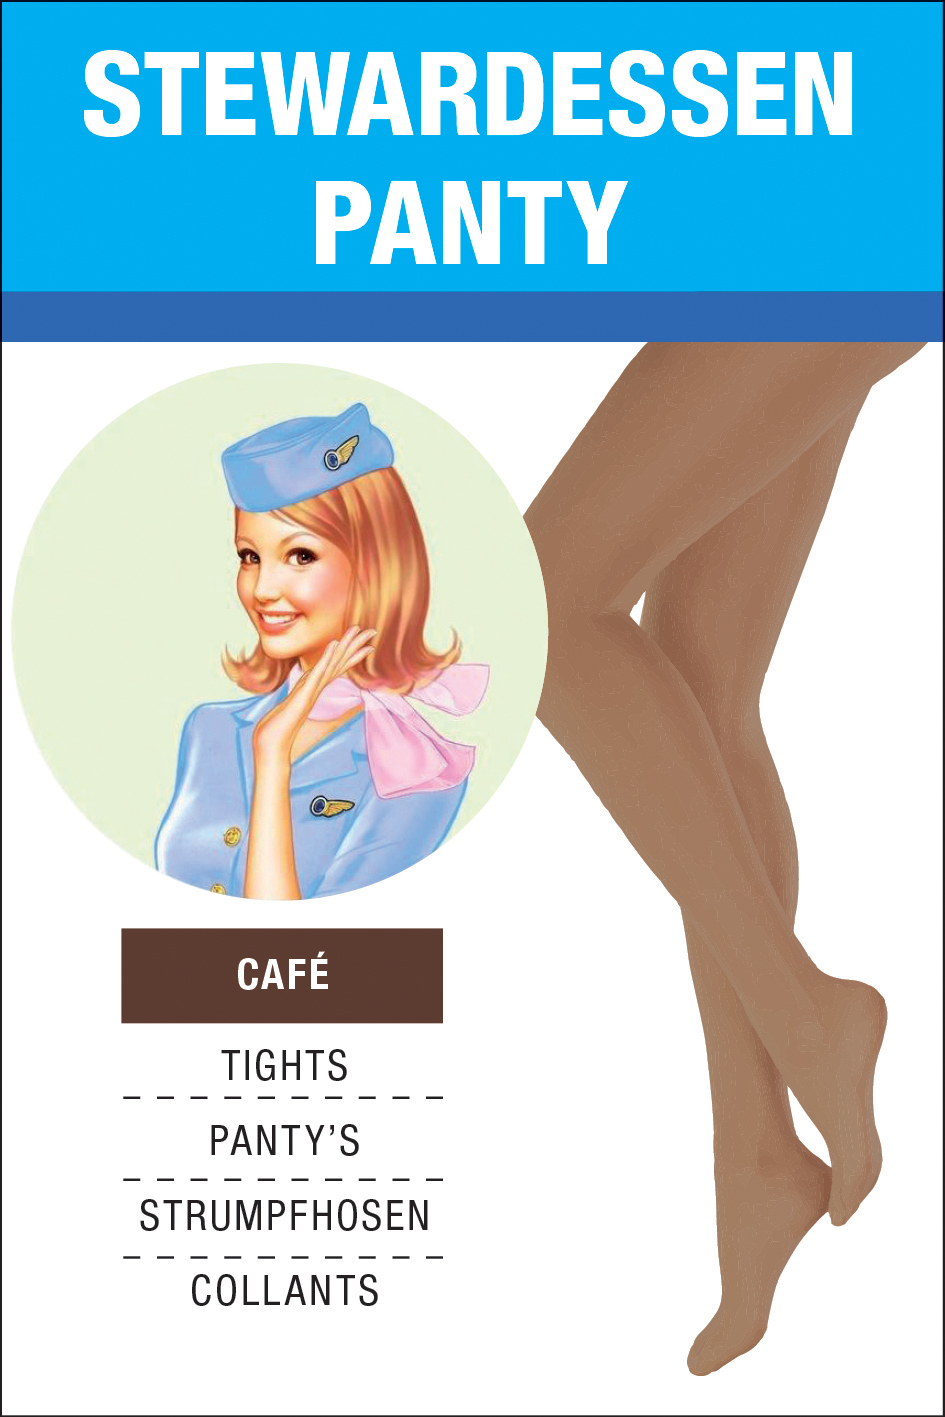 Stewardess_panty_cafe